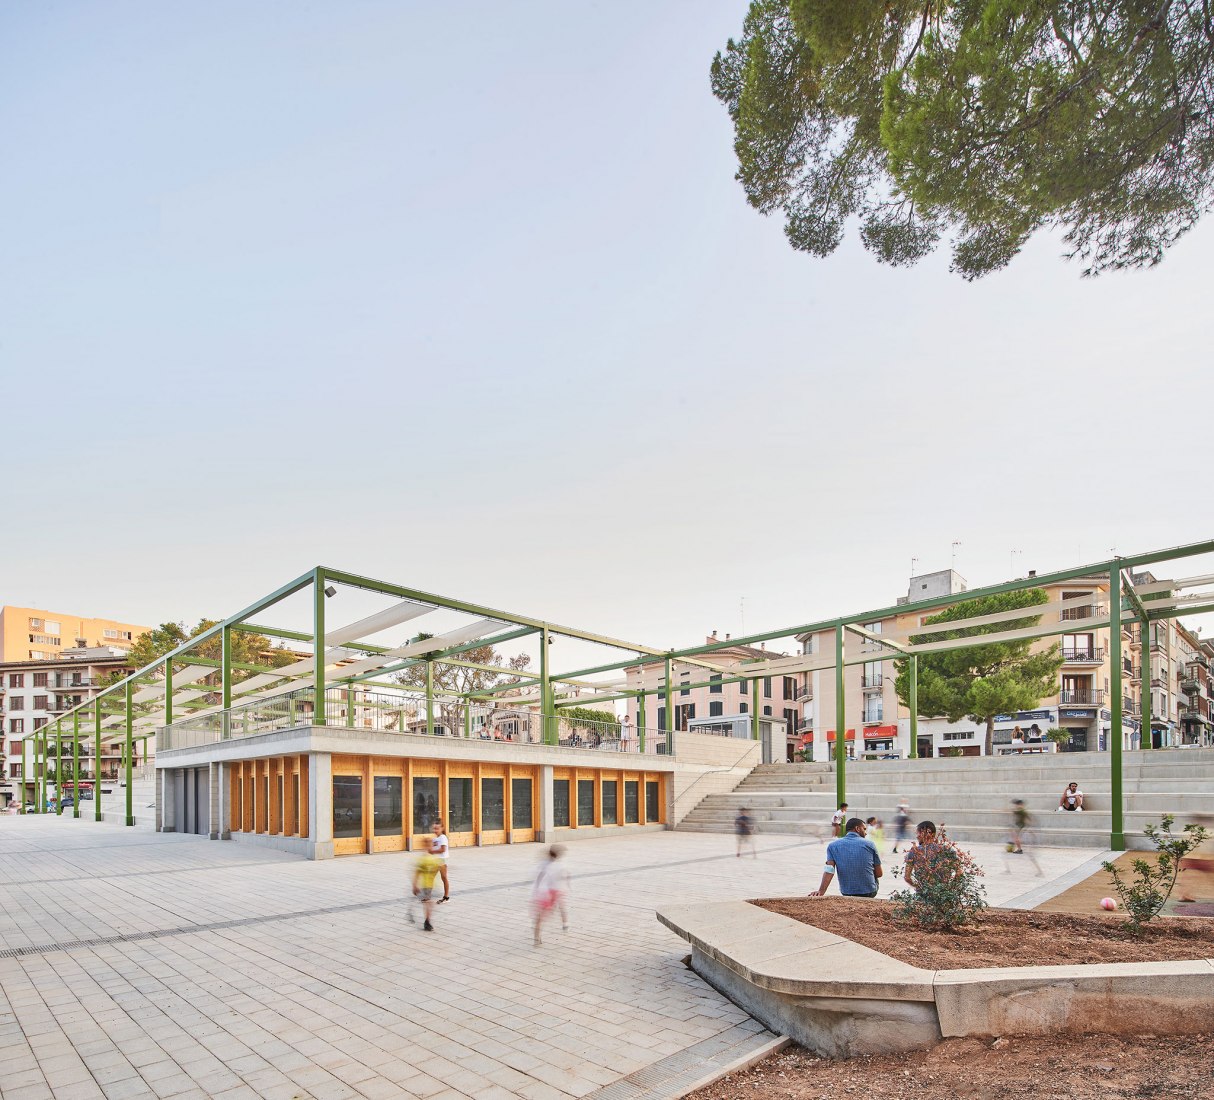 Frente local. Fonamental. Rehabilitación de la Plaza Mallorca por Son Estudi. Fotografía por José Hevia